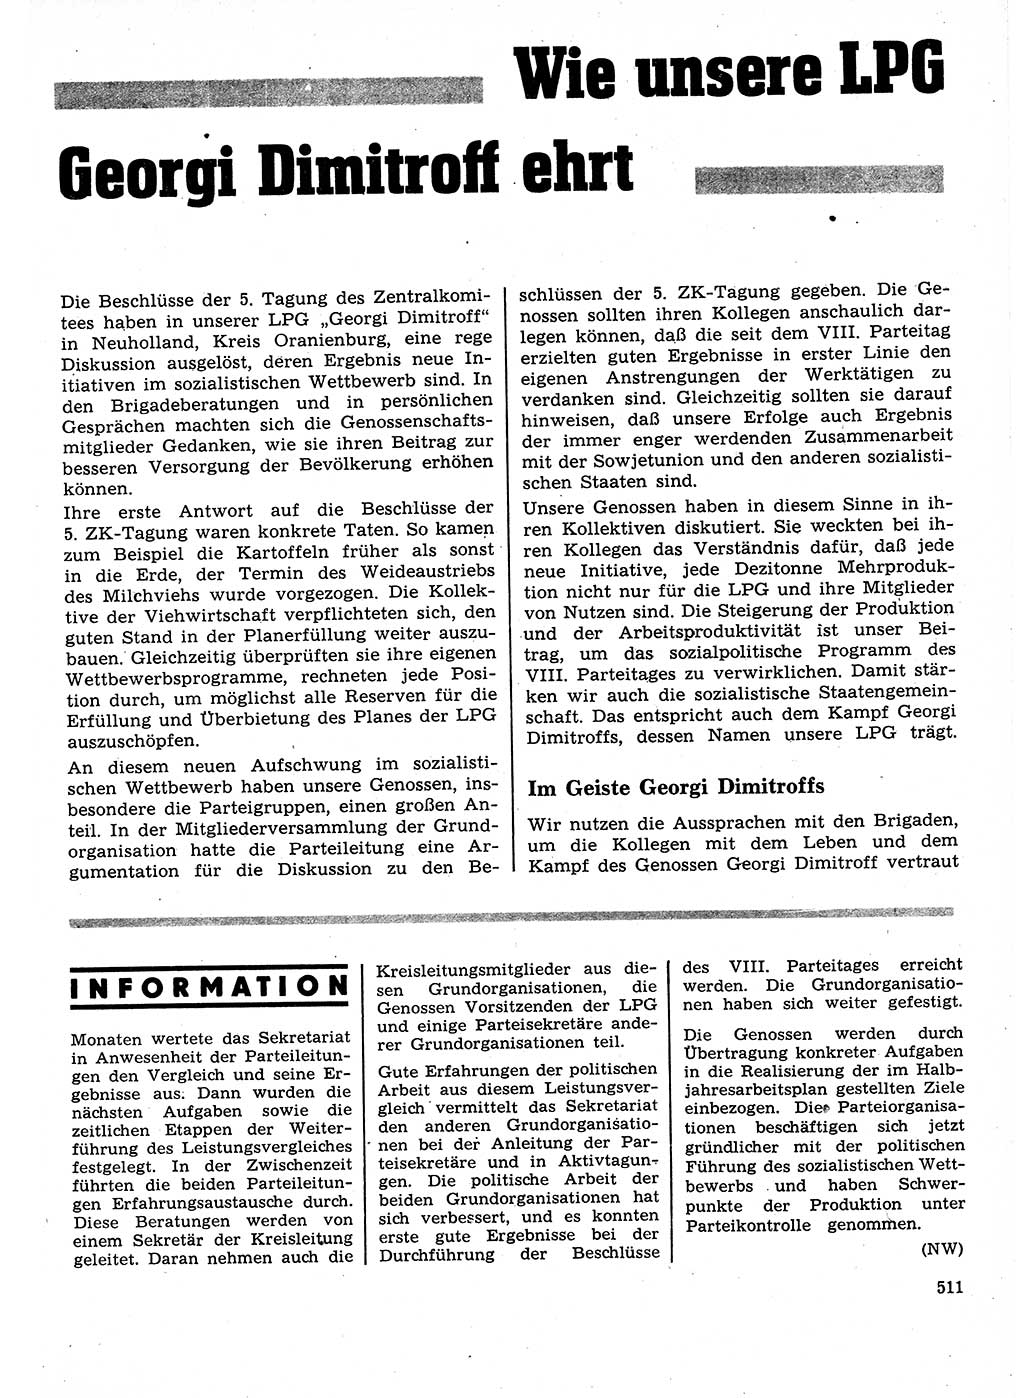 Neuer Weg (NW), Organ des Zentralkomitees (ZK) der SED (Sozialistische Einheitspartei Deutschlands) für Fragen des Parteilebens, 27. Jahrgang [Deutsche Demokratische Republik (DDR)] 1972, Seite 511 (NW ZK SED DDR 1972, S. 511)